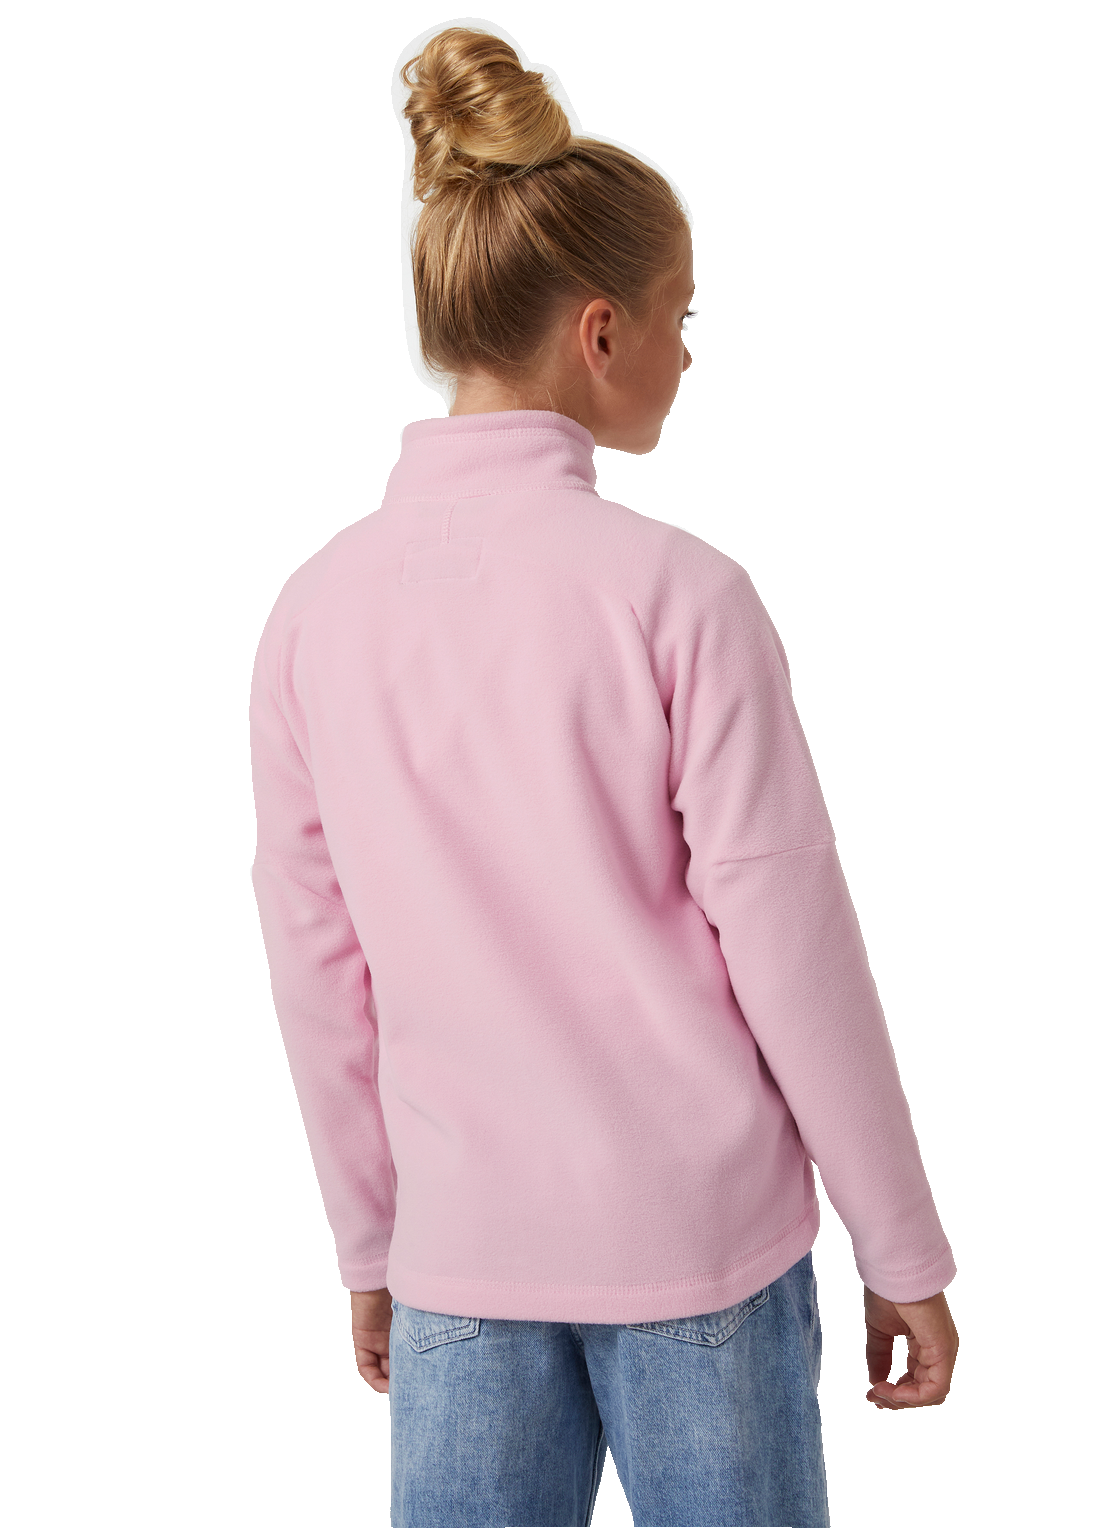 Helly Hansen Junior Daybreaker 2.0 fleecetakki värissä Pink Sorbet tytön päällä takaa kuvattuna